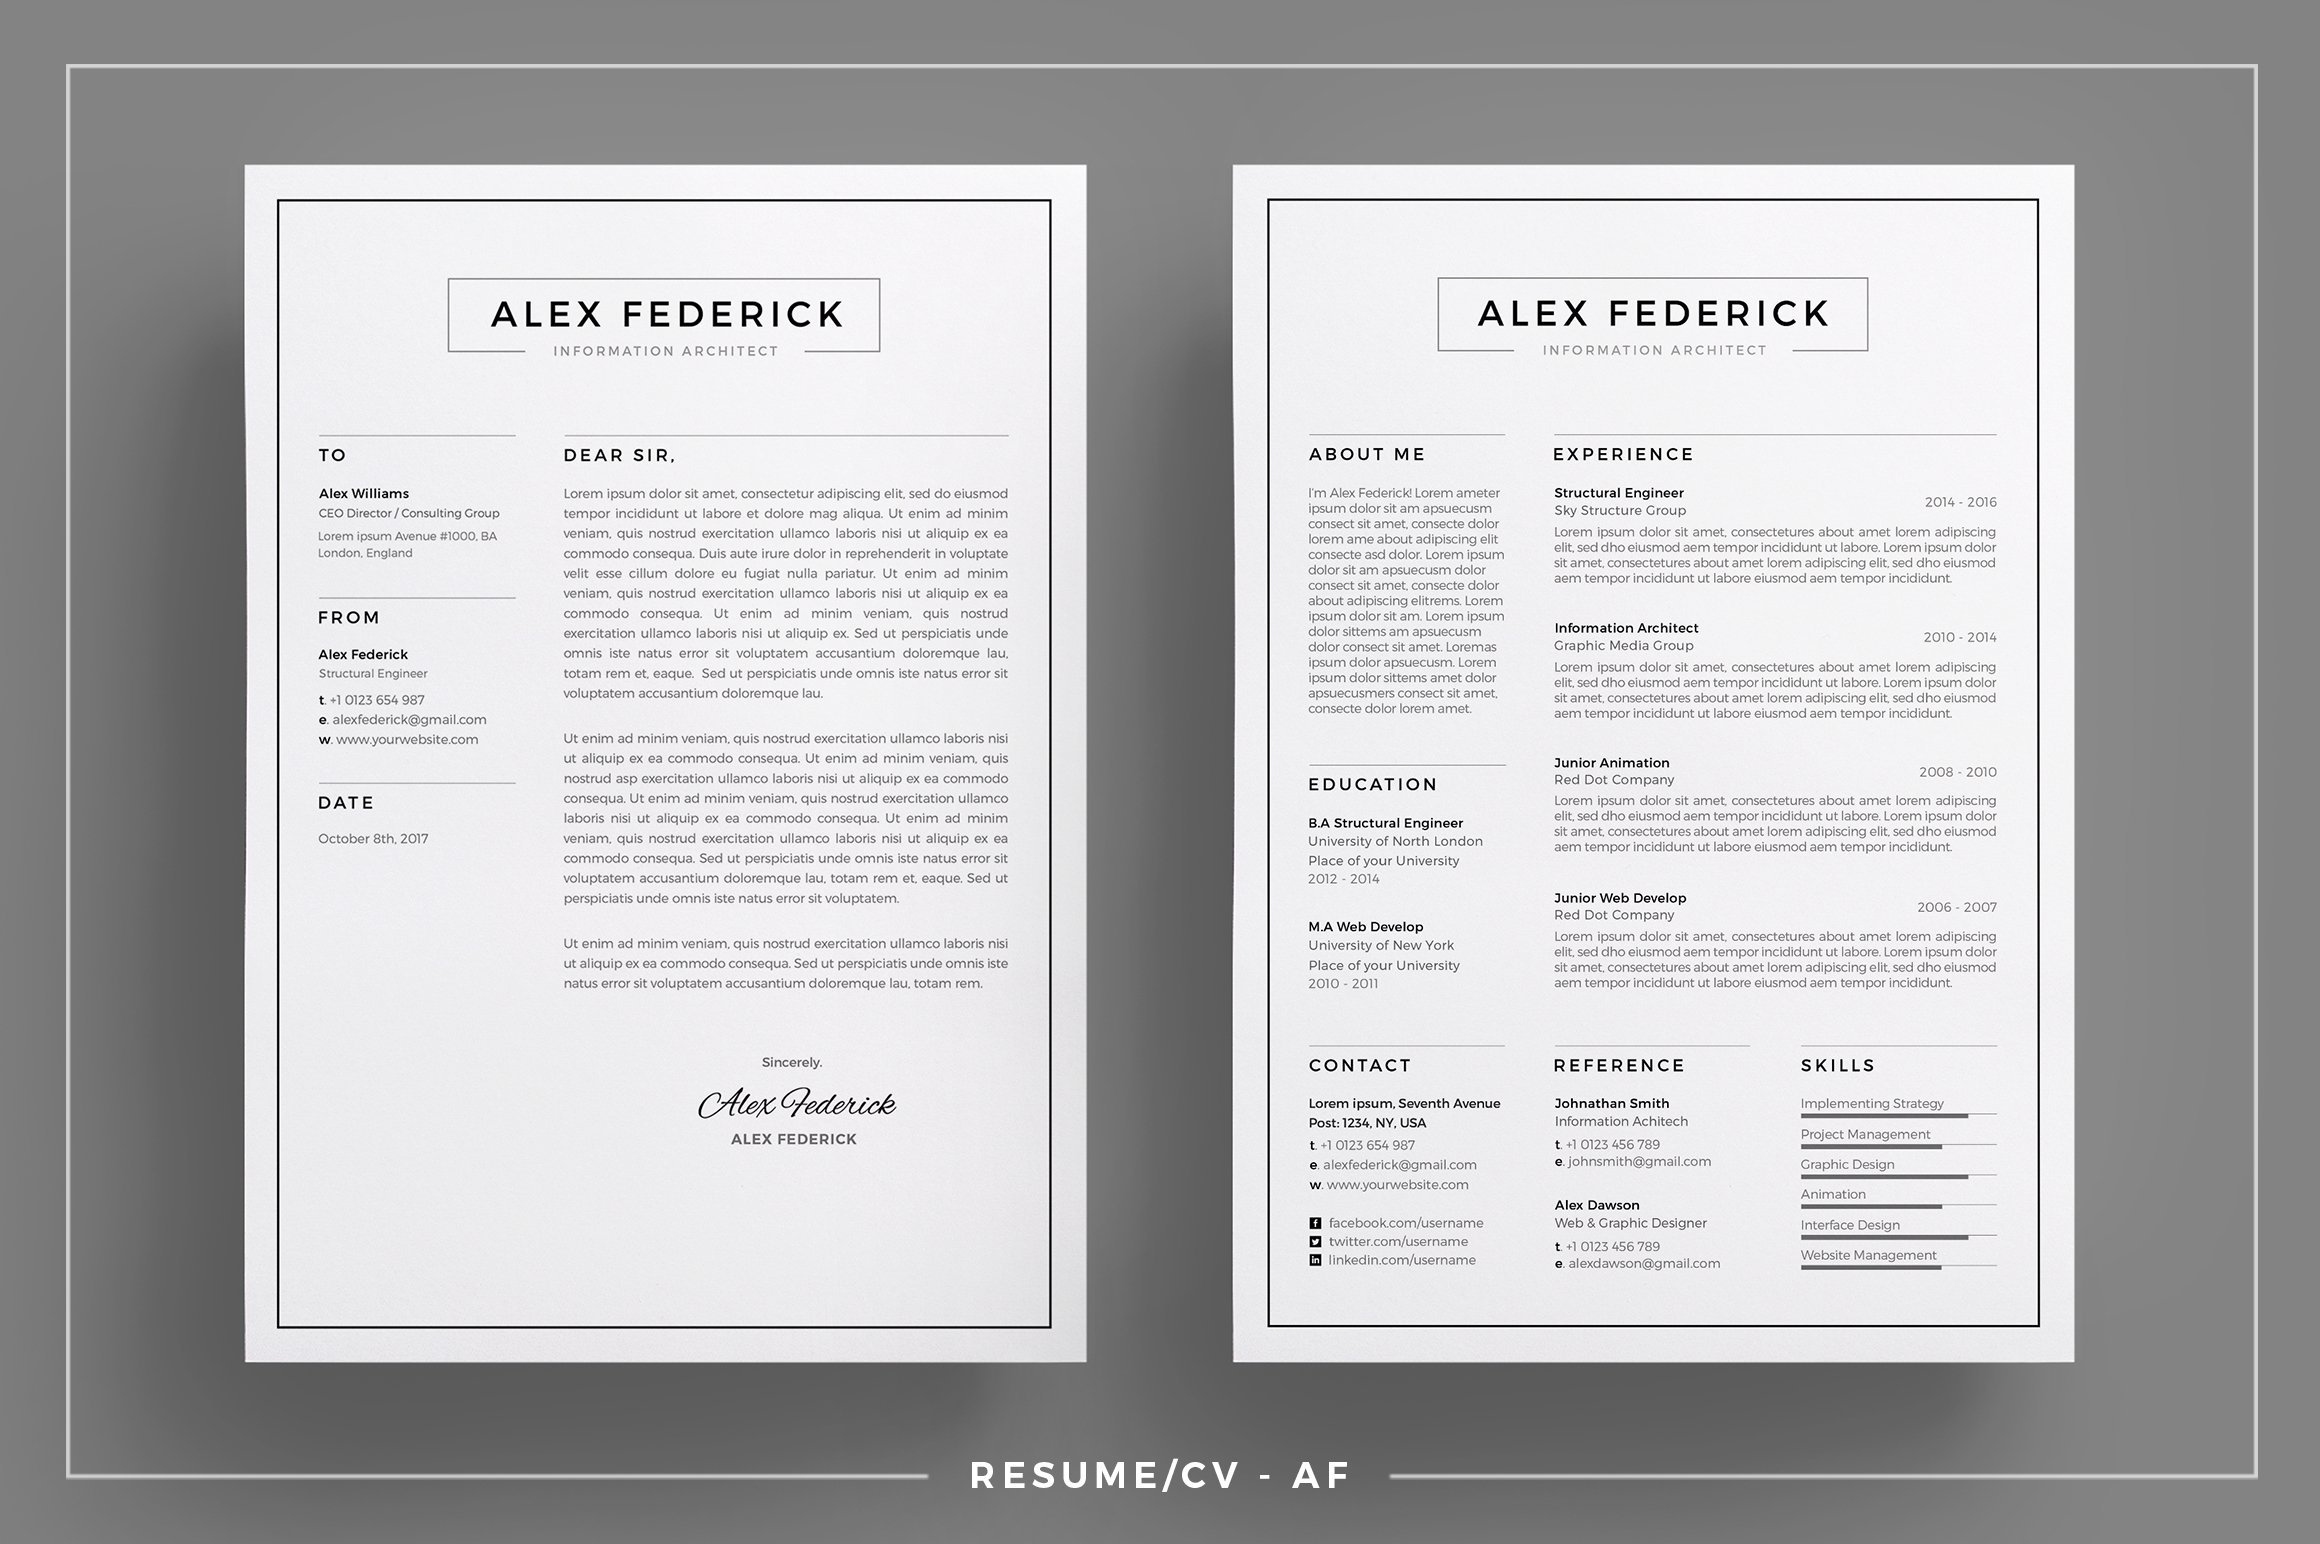 Resume/CV  - AF preview image.